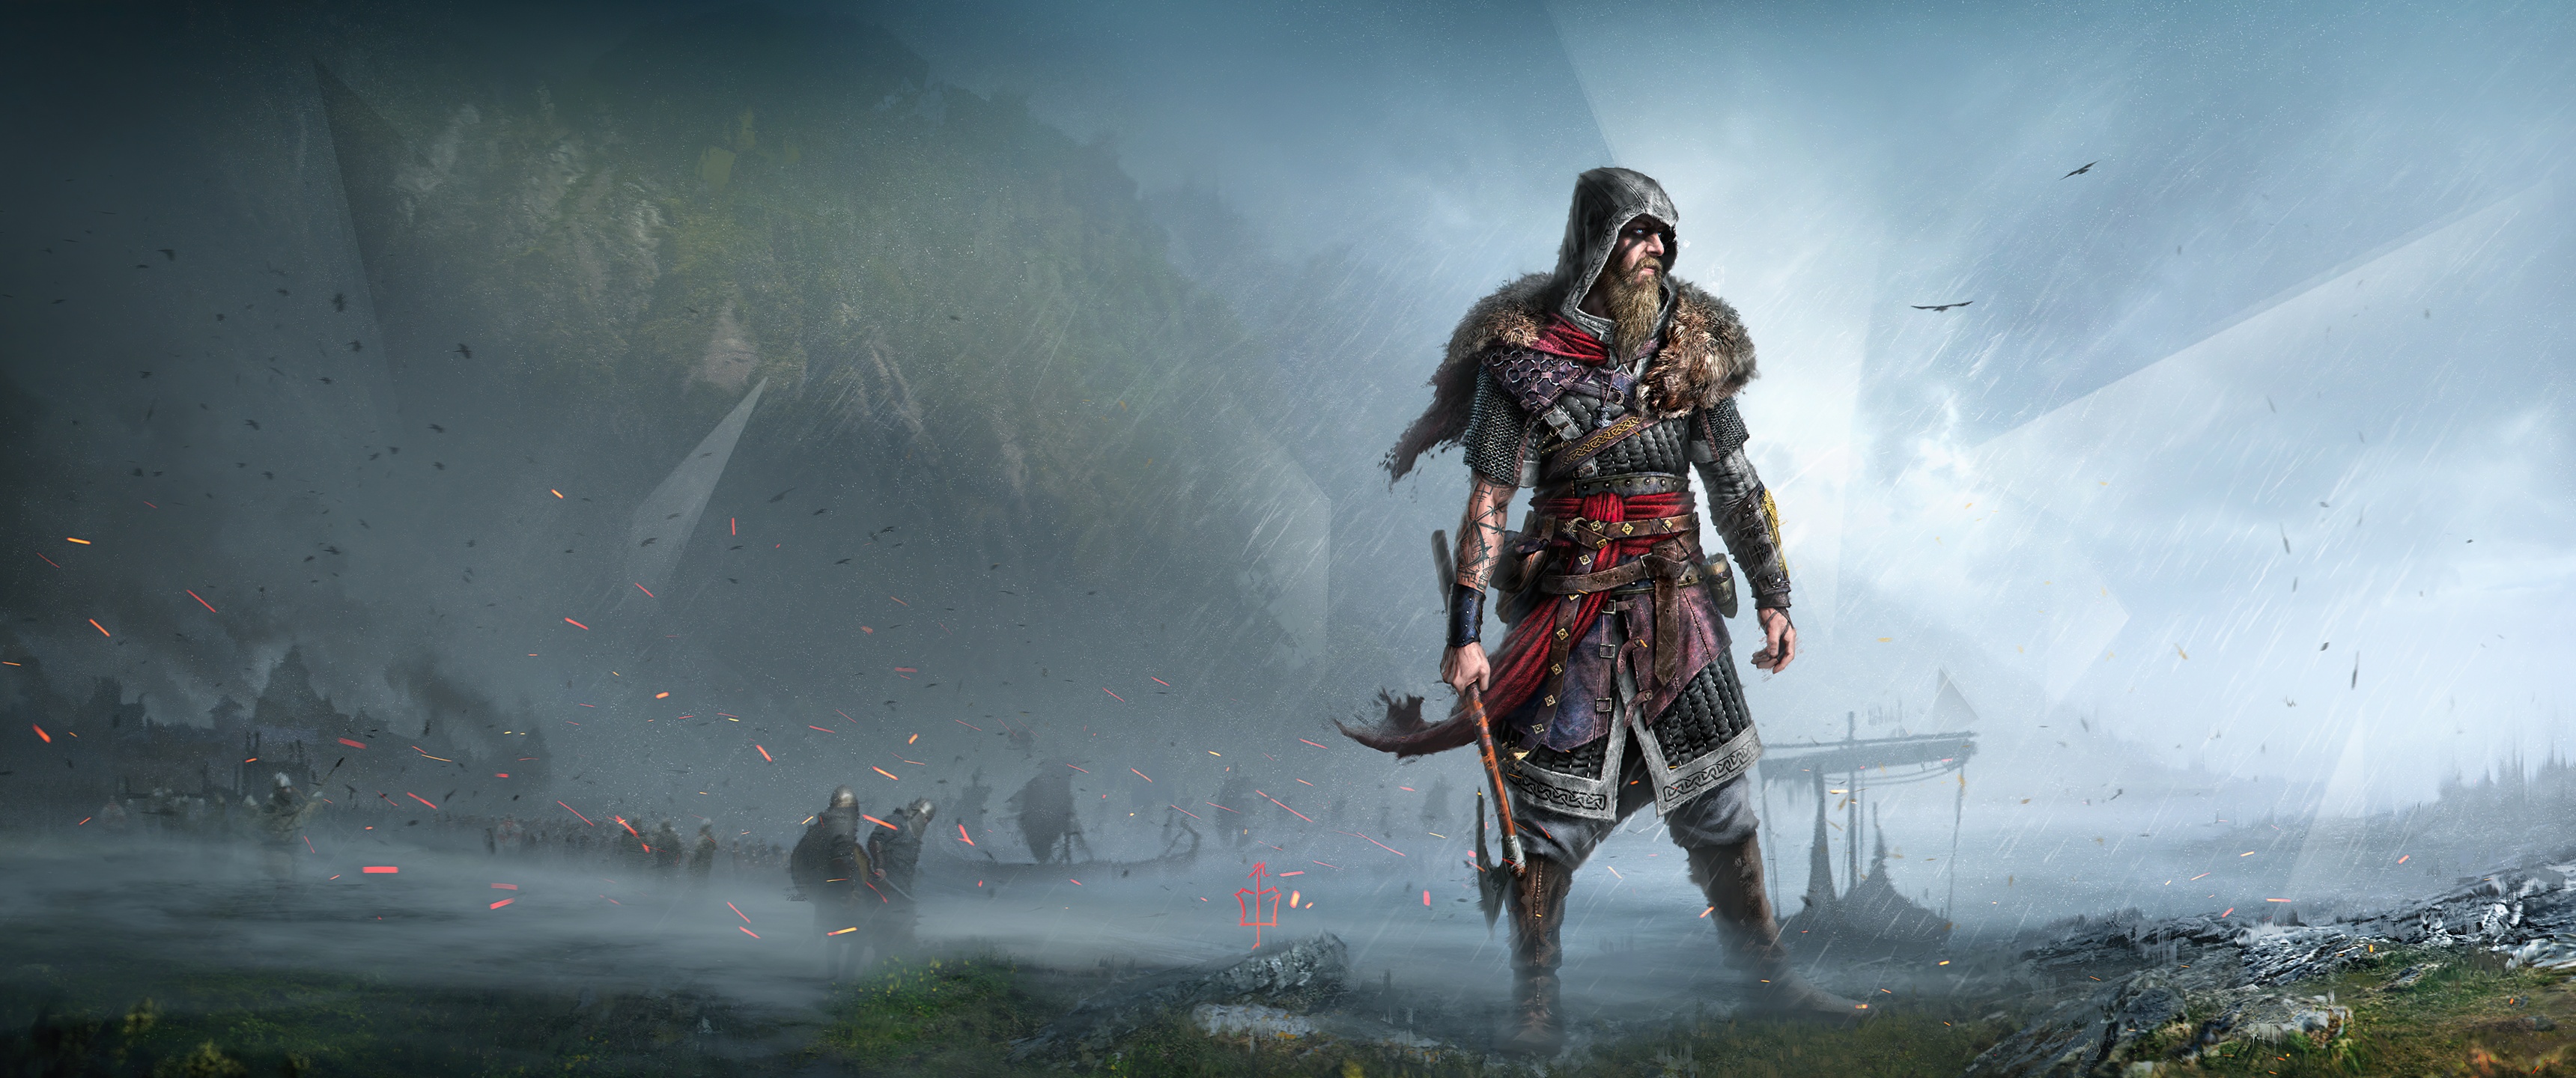 Hãy khám phá bức tranh nền Assassin\'s Creed Valhalla Wallpaper 4K - Viking raider đầy mê hoặc này và chiêm ngưỡng vẻ đẹp hoang dã, điển hình của chiến binh Viking. Với độ phân giải cao 4K, bạn sẽ được đắm chìm trong khung cảnh tuyệt đẹp, đầy tính chất phiêu lưu chưa từng thấy.